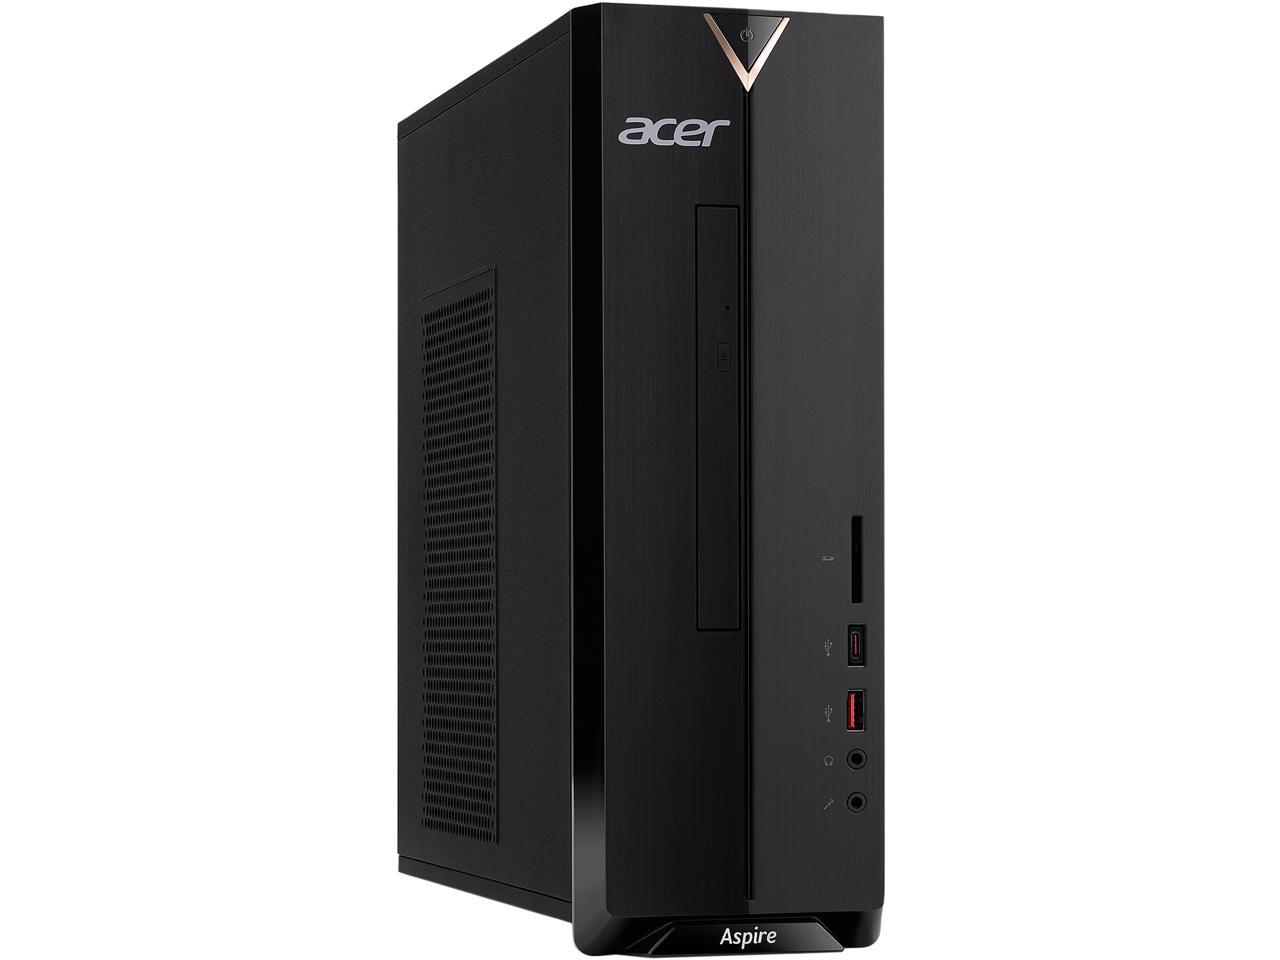 2021 Acer Aspire Xc 895 Desktop Intel Core I3 10100 4 Core Processor